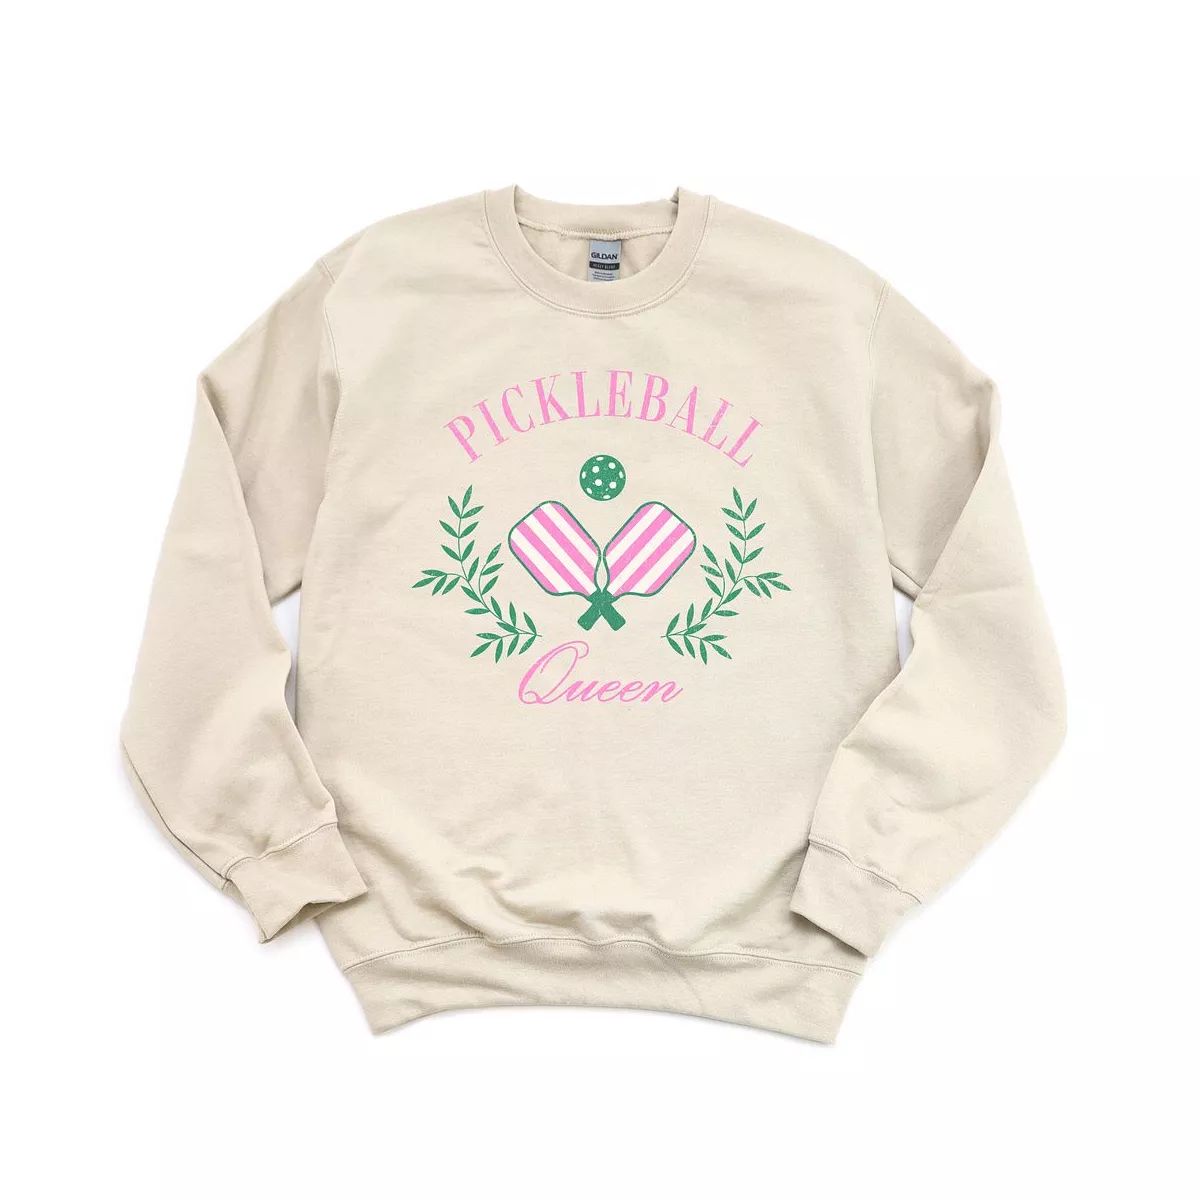 Simply Sage Market Women's Graphic Sweatshirt Pickleball Queen | Target